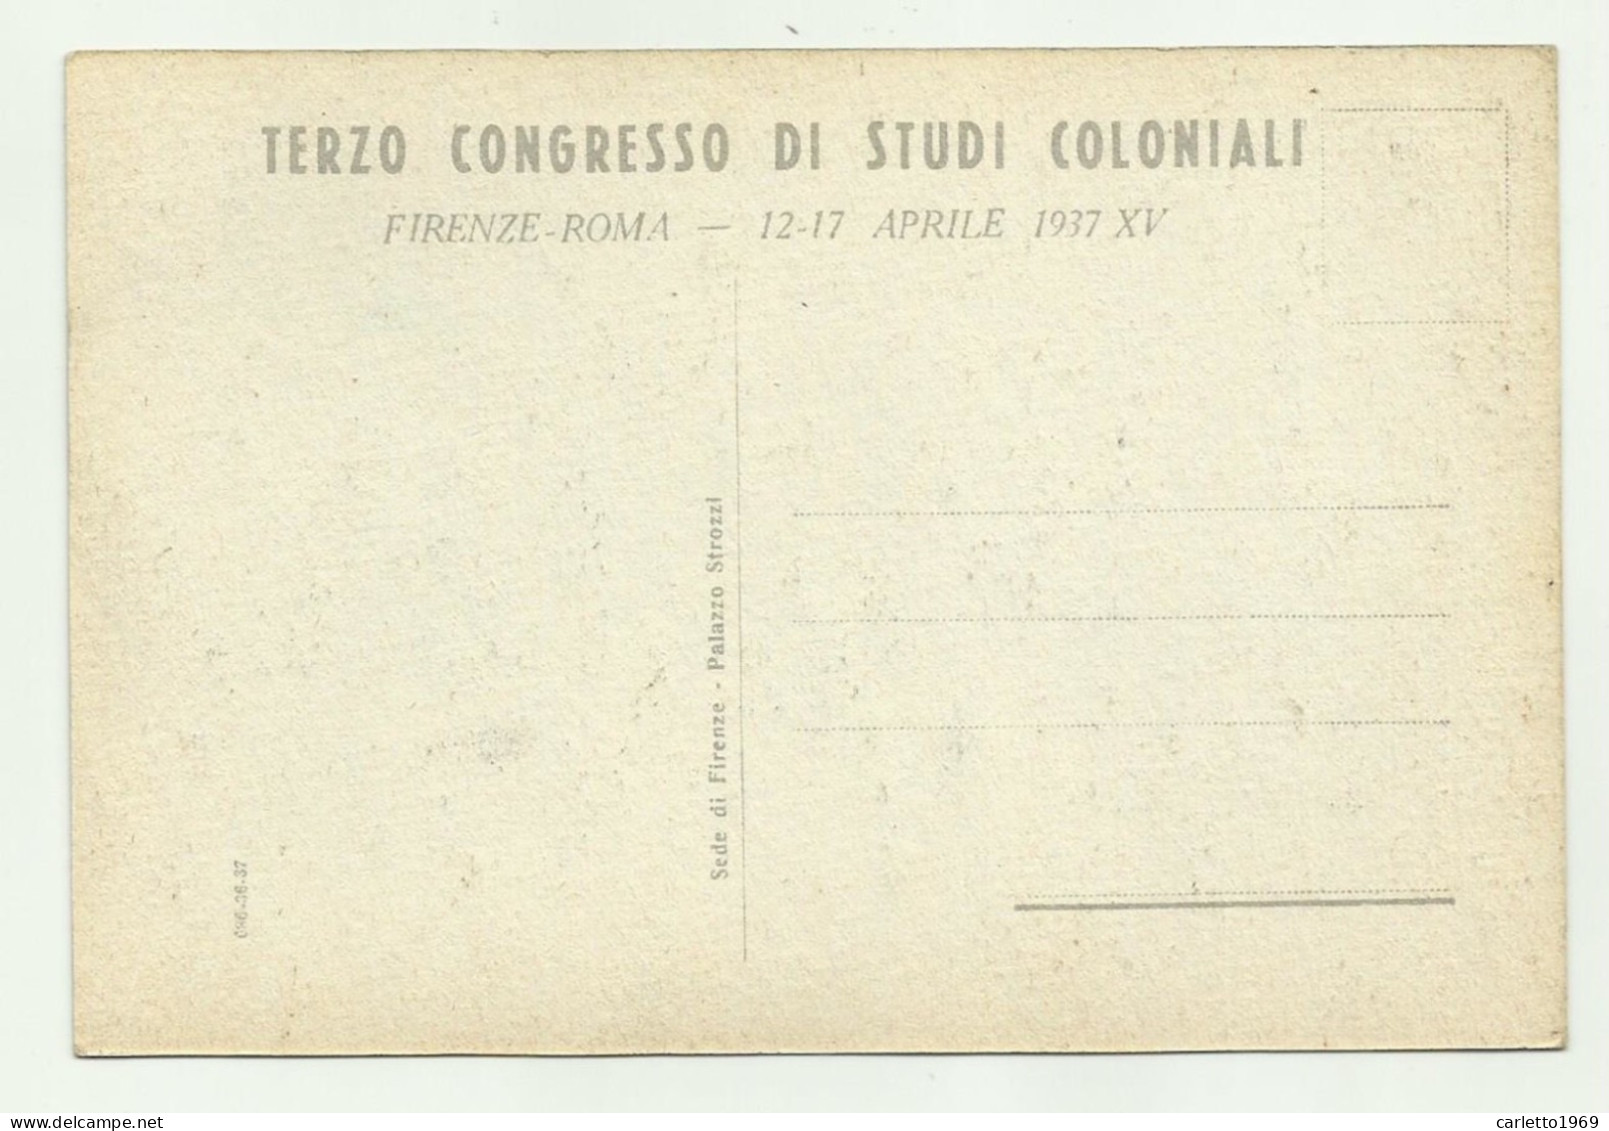 3 CONGRESSO NAZ. STUDI COLONIALI - FIRENZE - ROMA 12-17 APRILE 1937 - NV  FG - Material